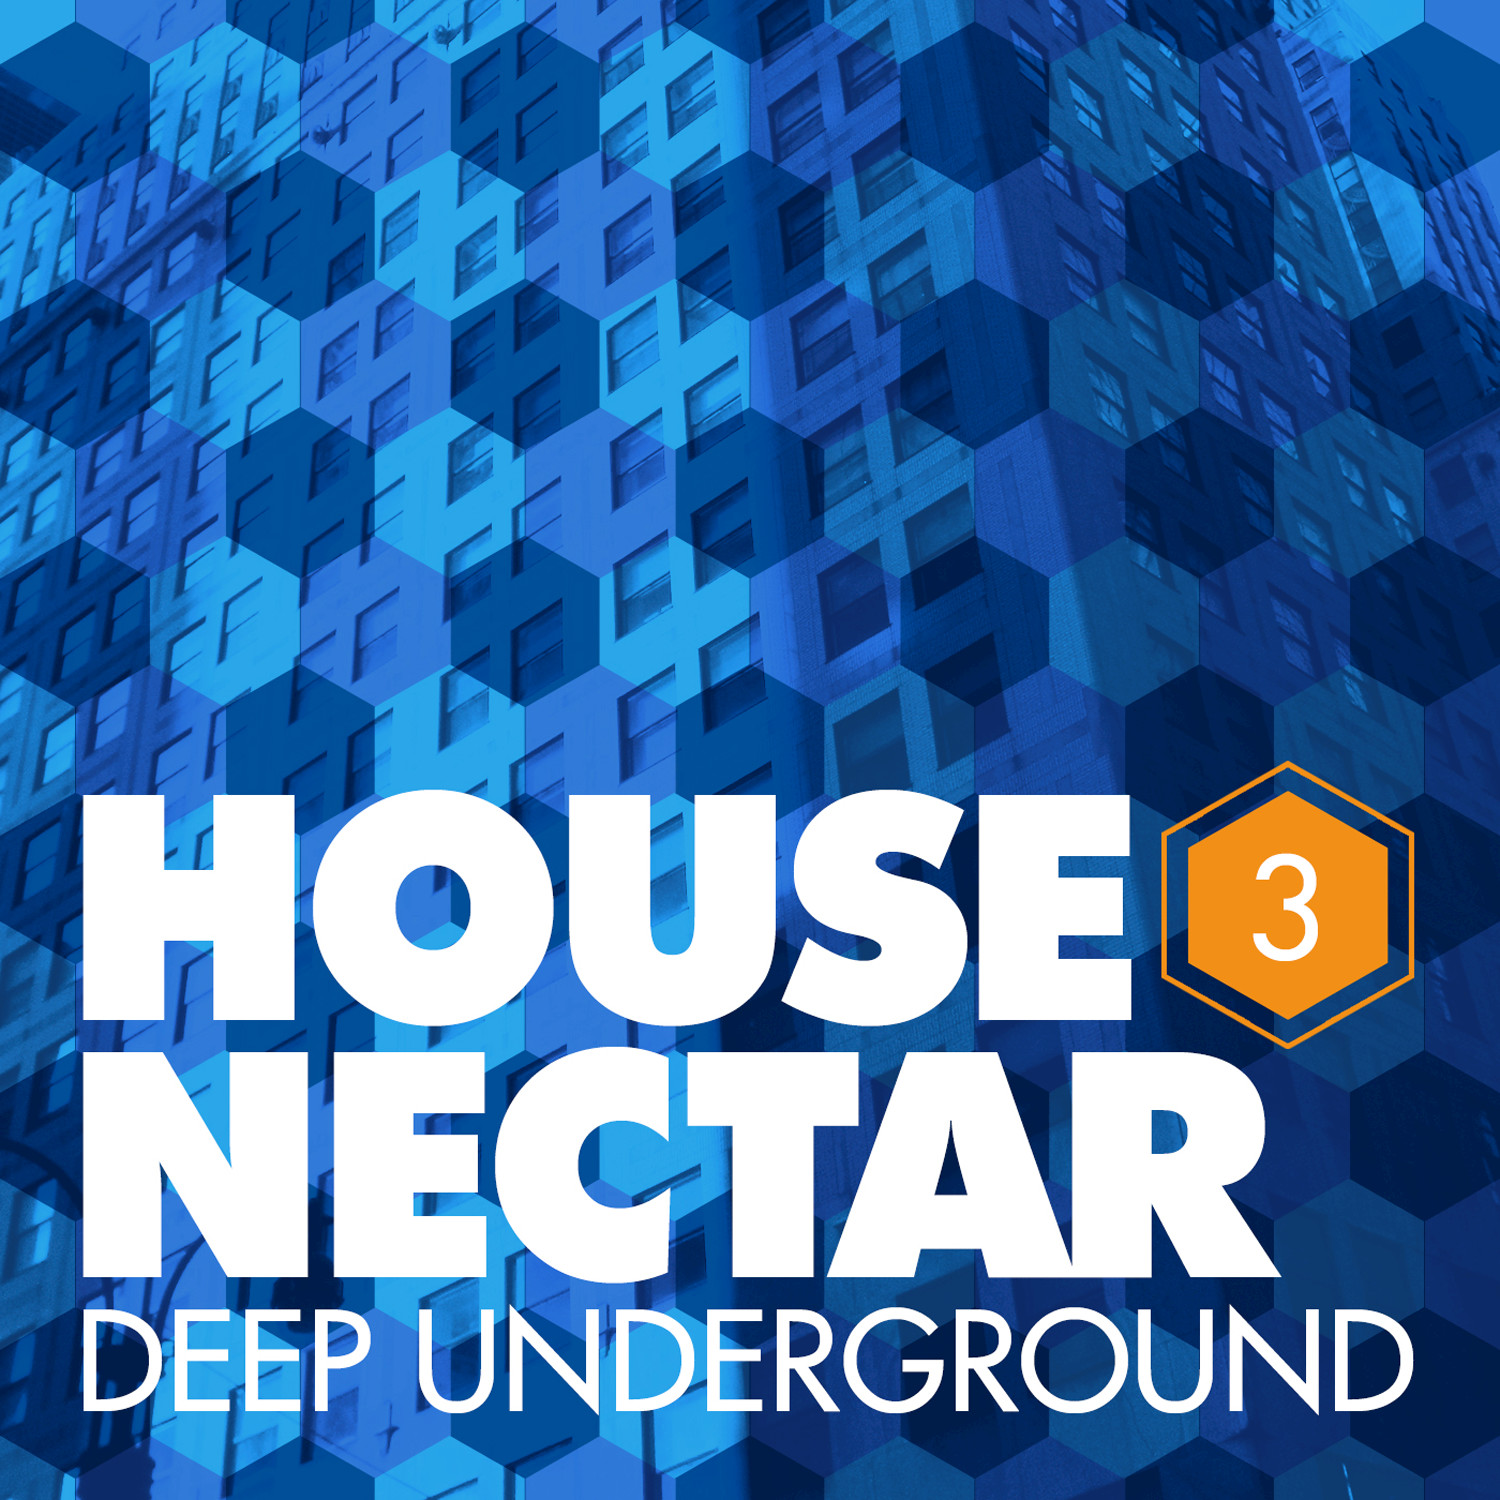 Underground House Nectar, Vol. 3